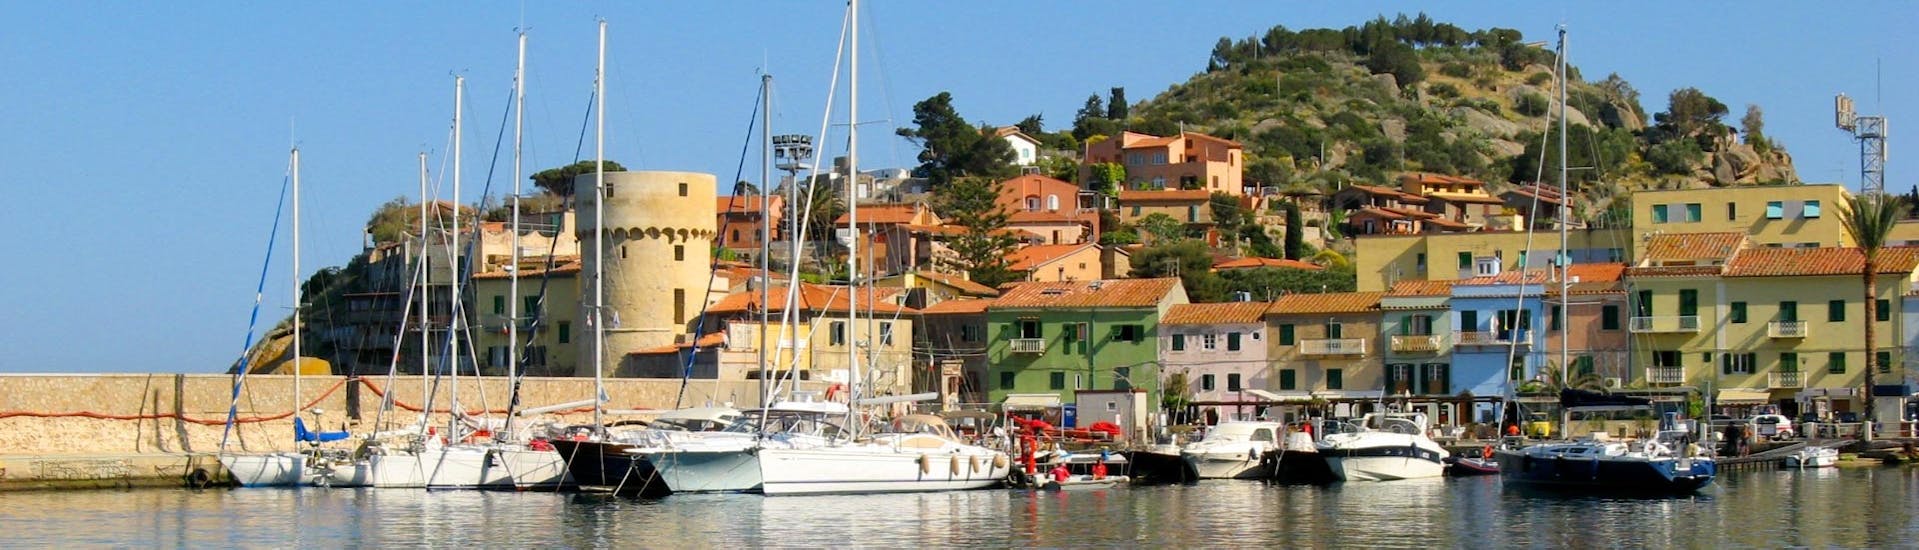 Vista del paesino vicino al porto durante la nostra escursione in barca all'Isola del Giglio con Toscana Mini Crociere